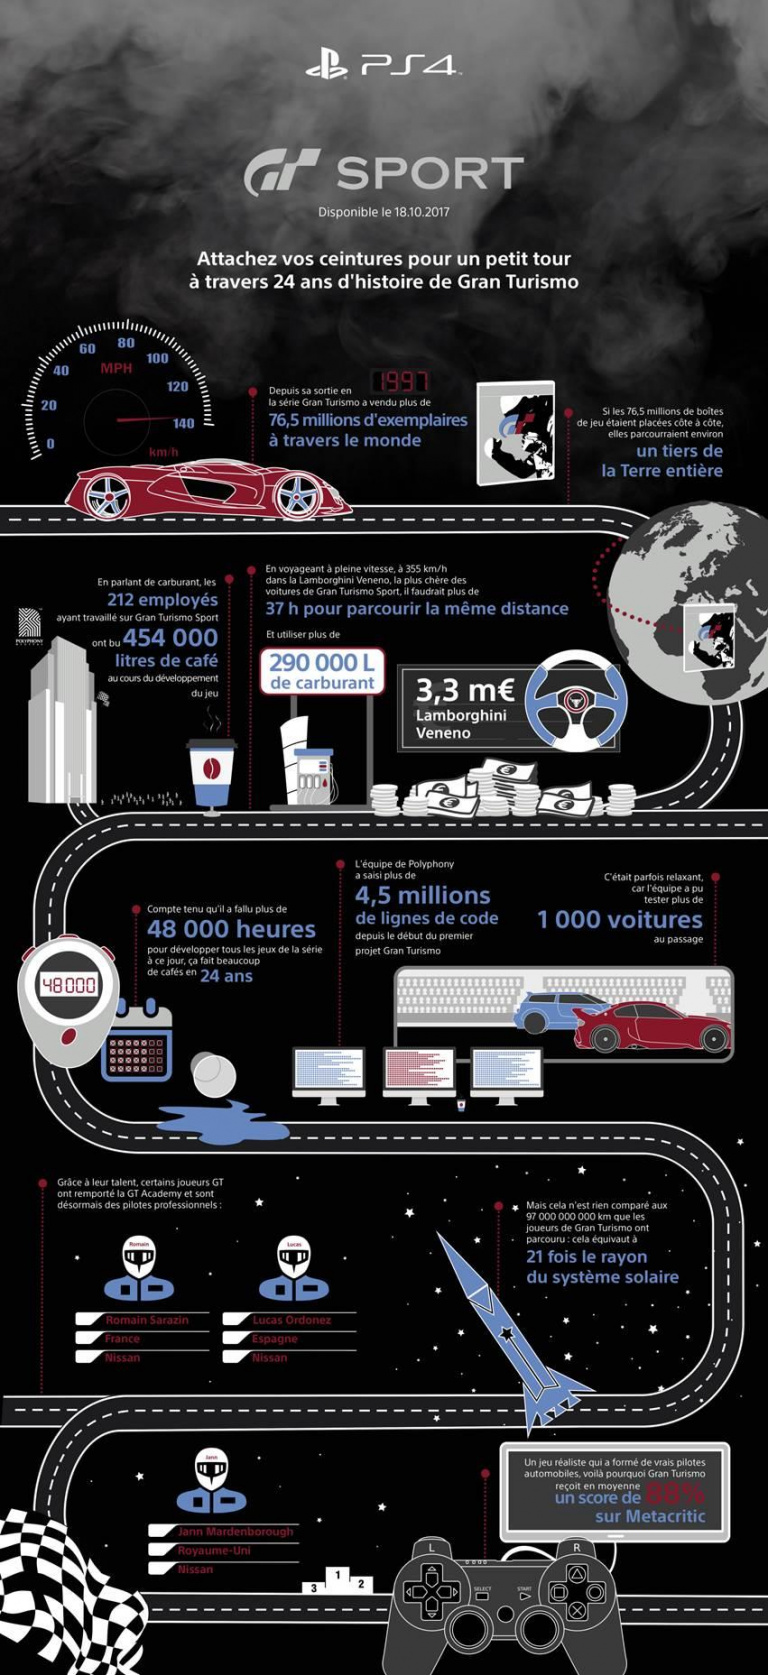 Gran Turismo : Une infographie pour célébrer les 20 ans de la licence